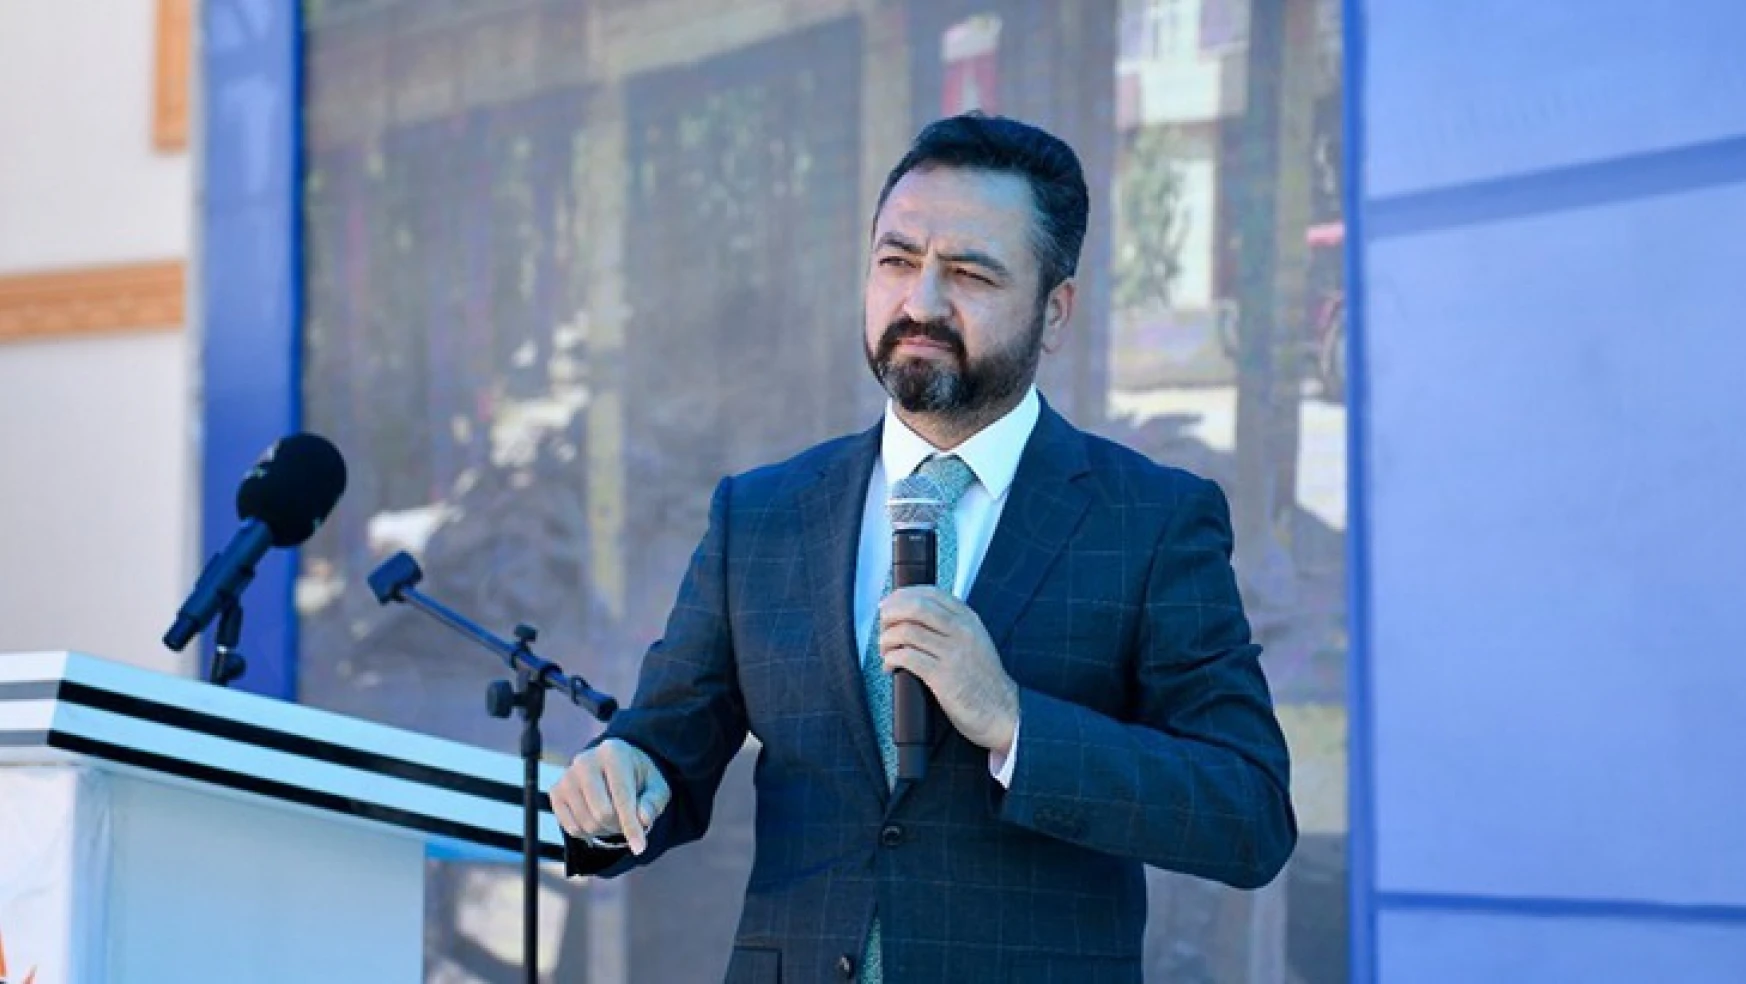 Kahramanmaraş'ta bir belediye başkanının testi pozitif çıktı